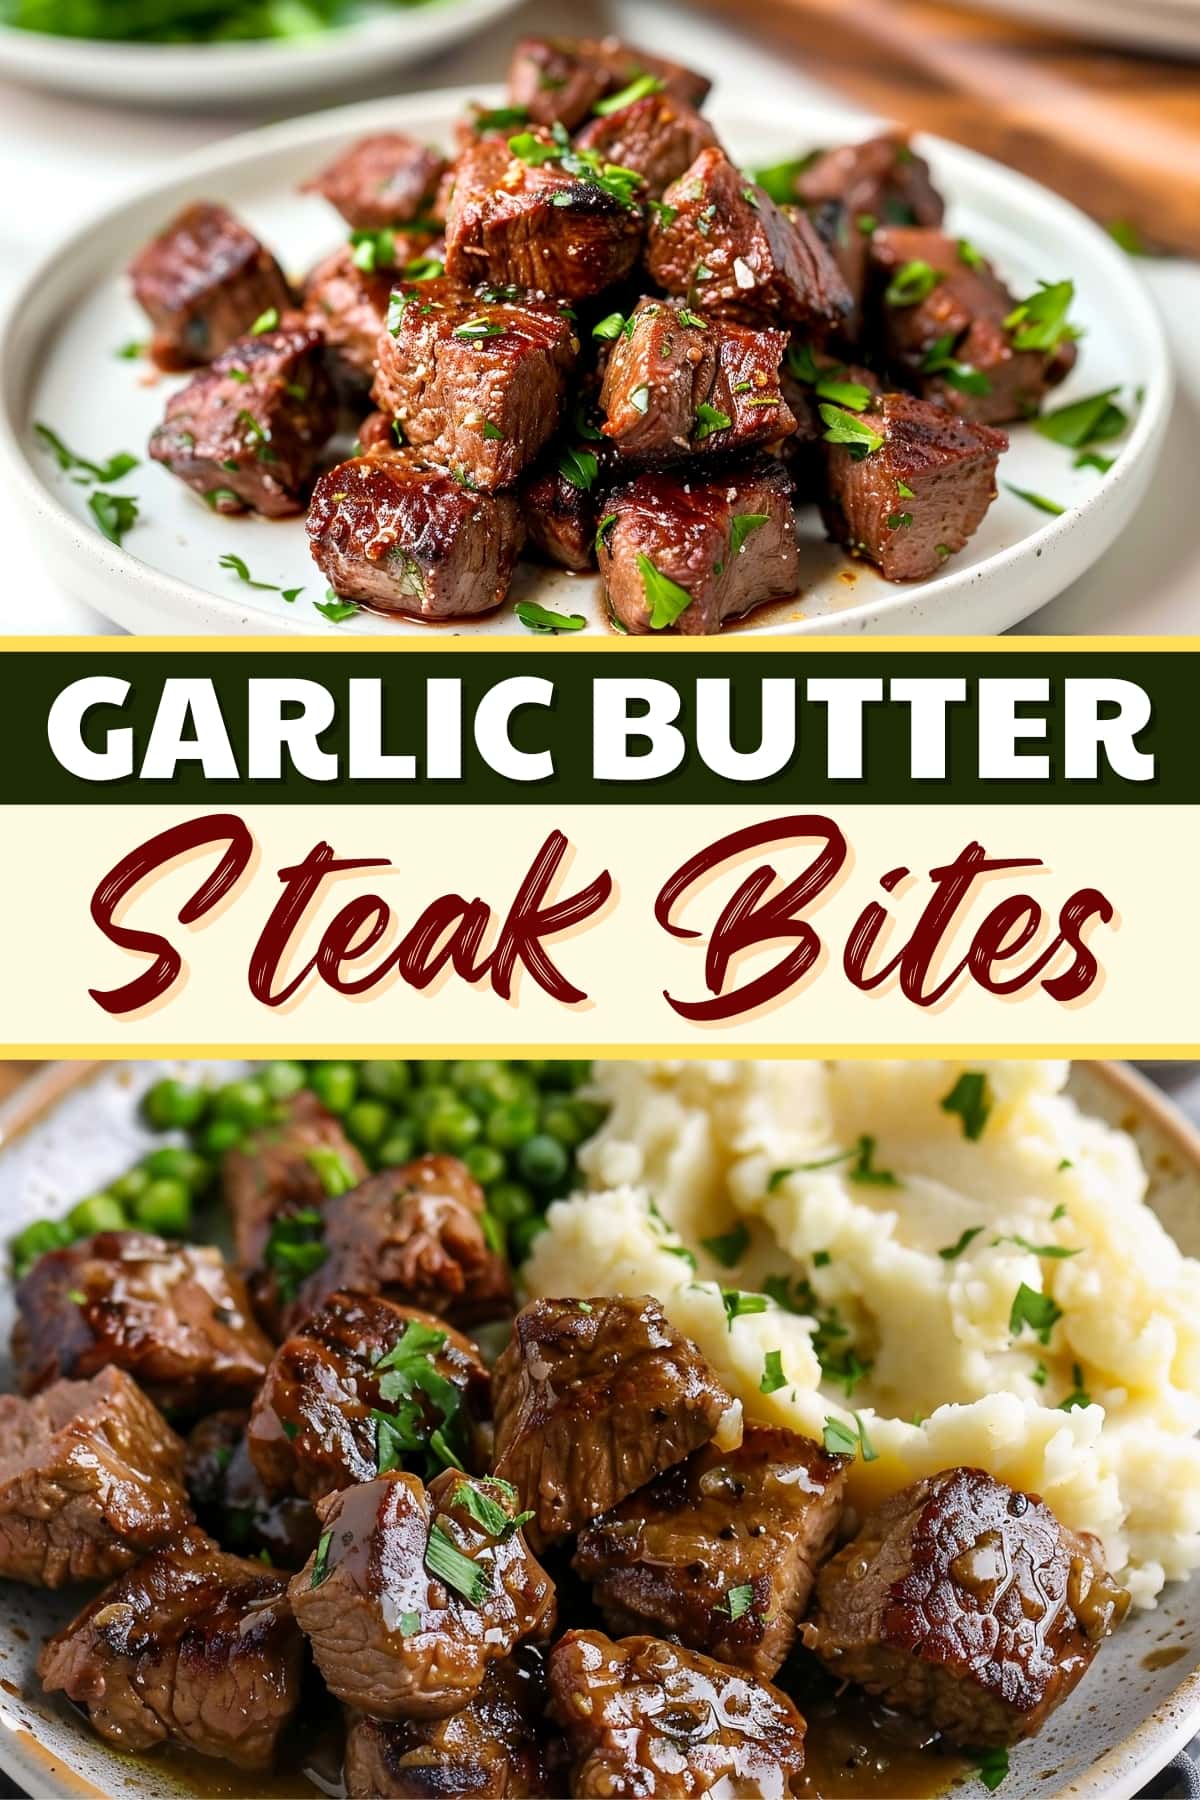 Garlic Butter Steak Bites